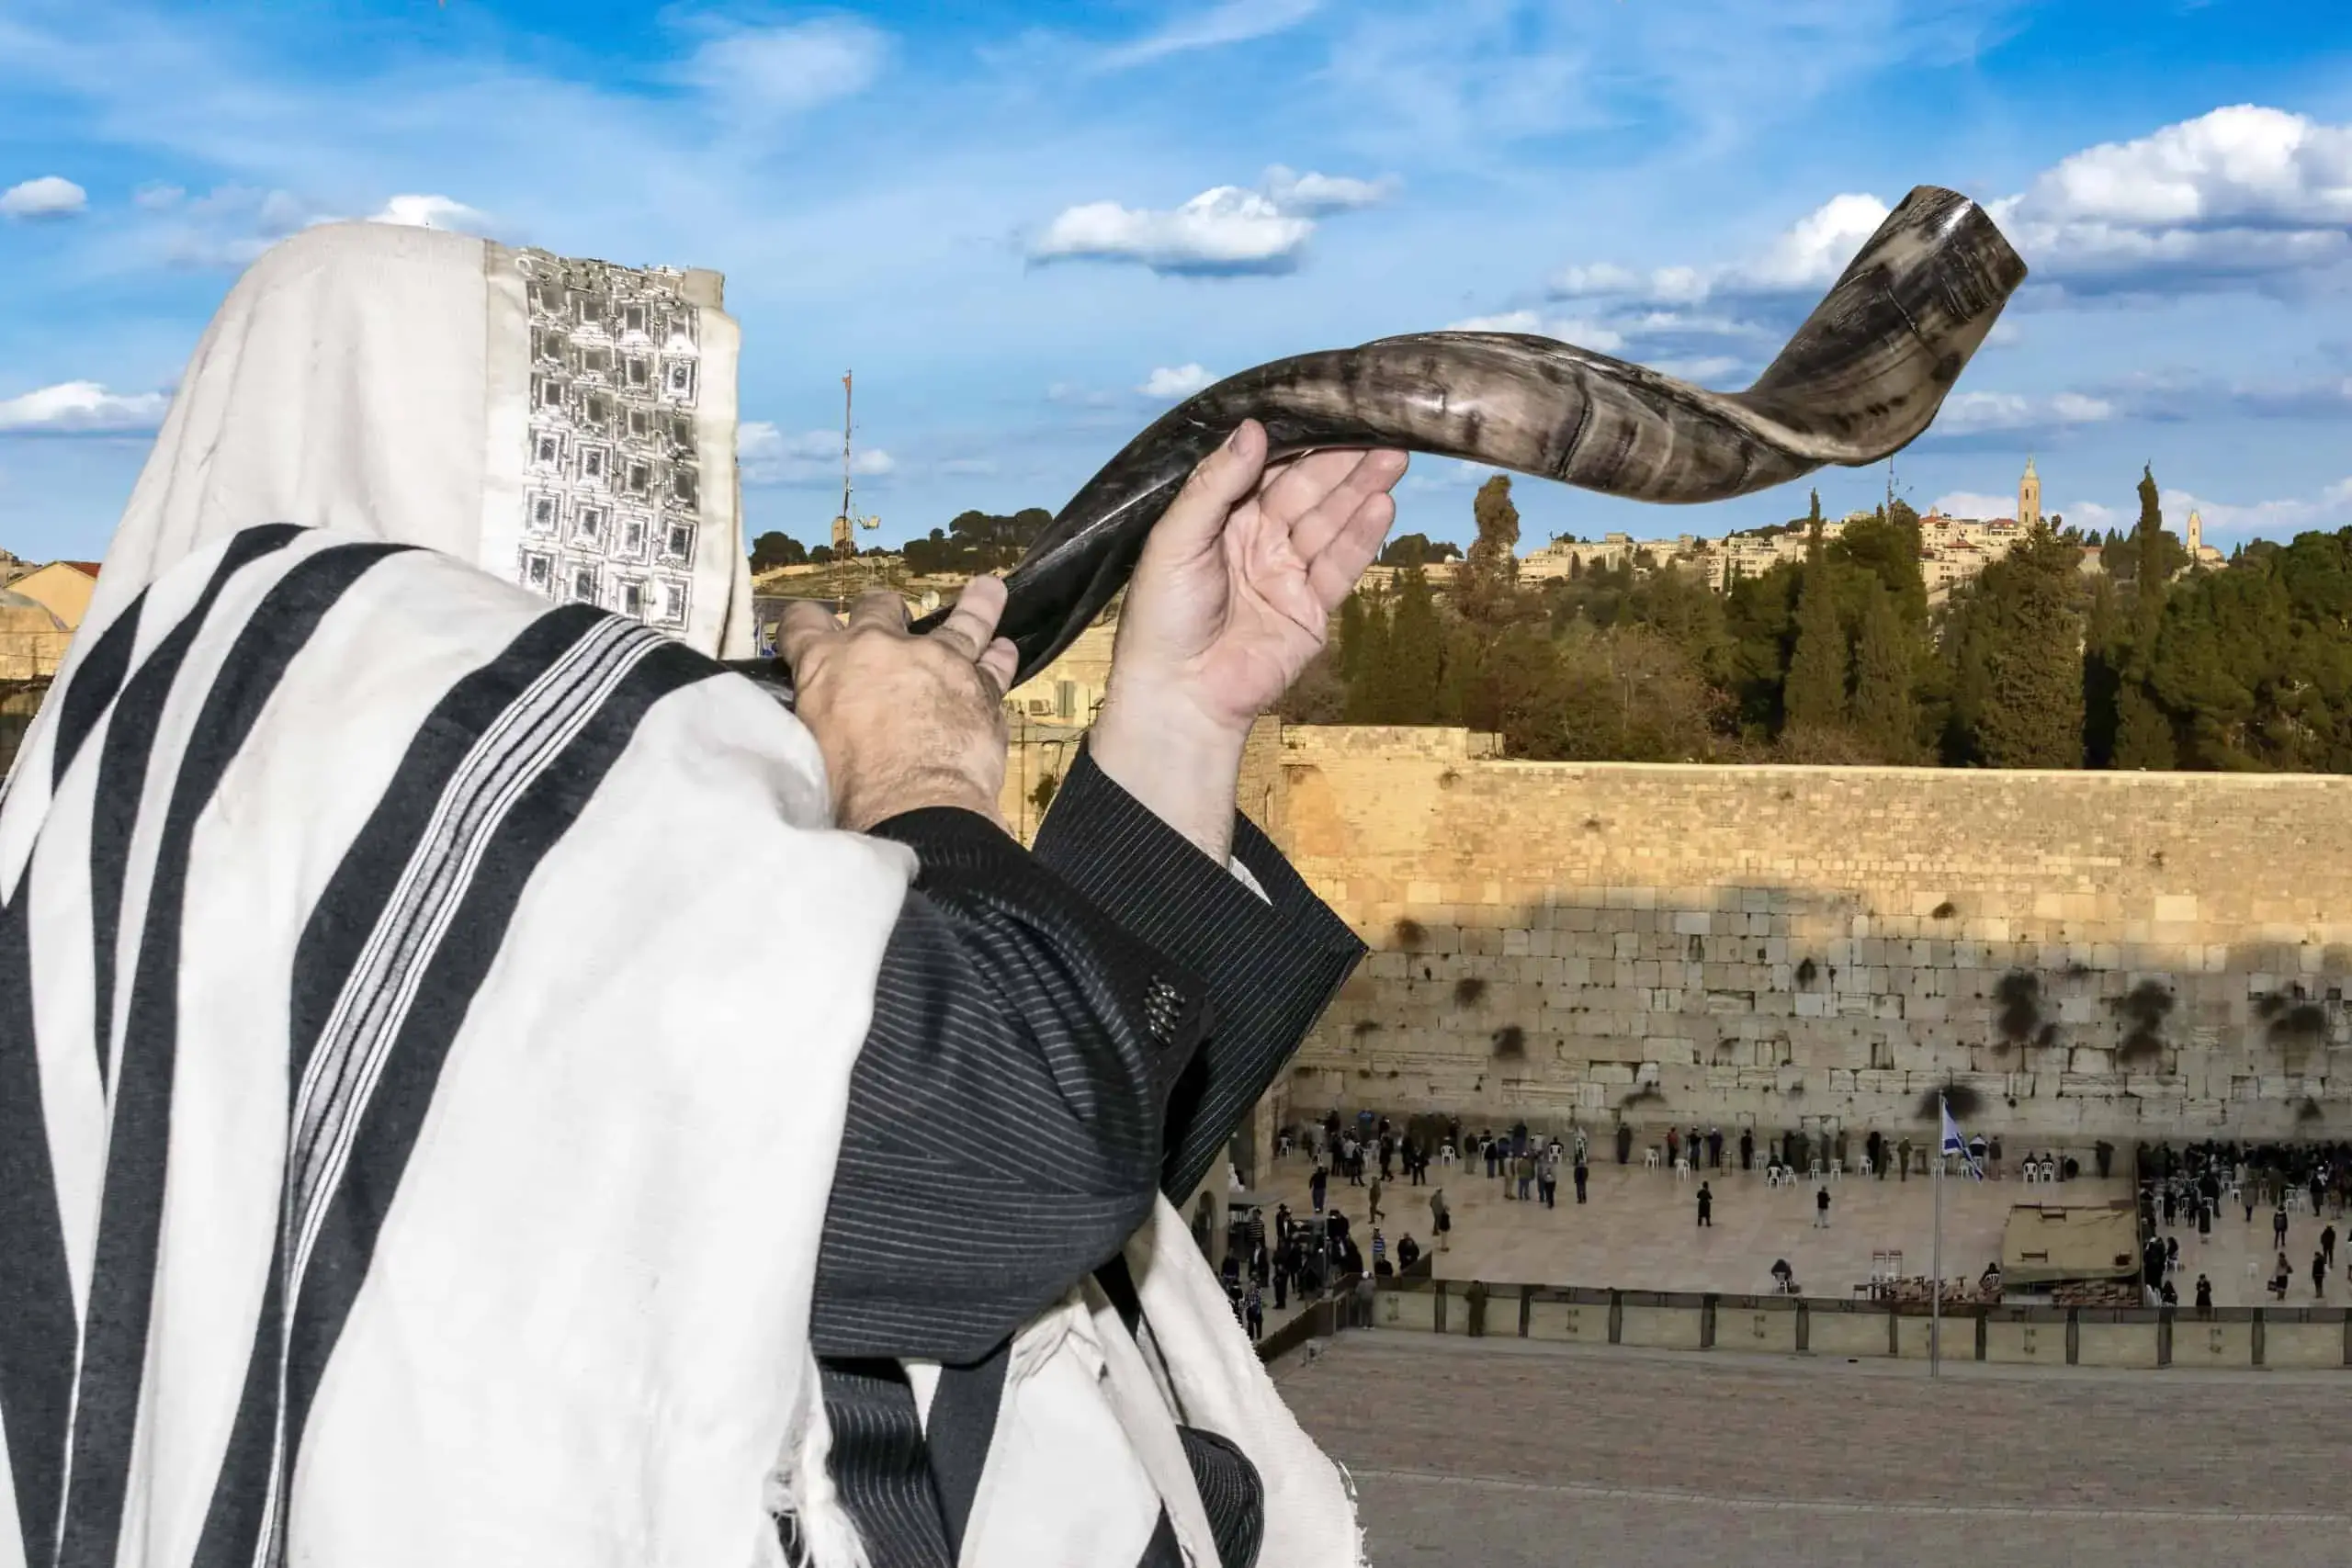 תקיעת שופר בכותל בירושלים. צולם בעת צילום אירועים בכותל. תחת קטגוריות אירועים וצלם בר מצווה של מגנטסטאר צילום אירועים